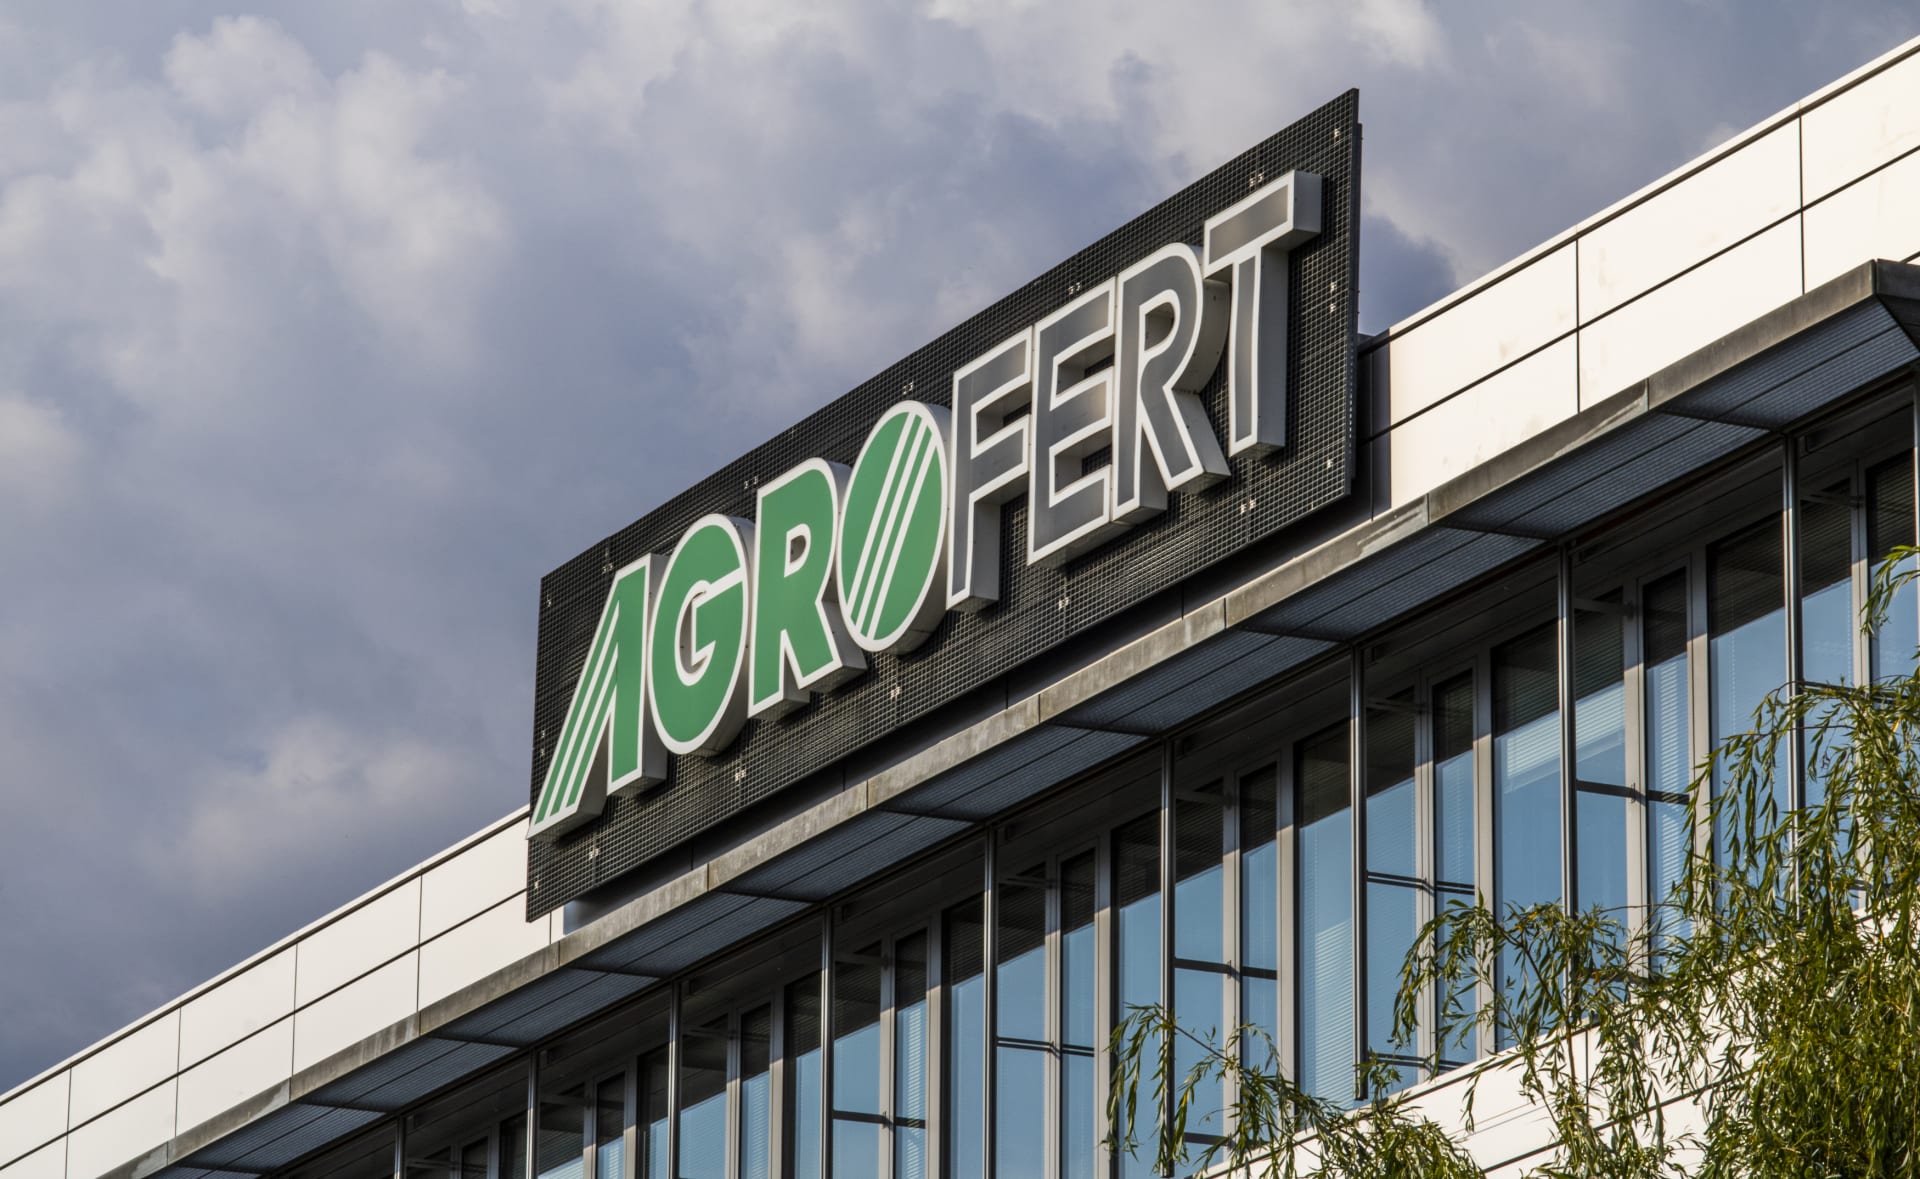 Firmy z koncernu Agrofert žalují Státní zemědělský intervenční fond kvůli neproplaceným dotacím.